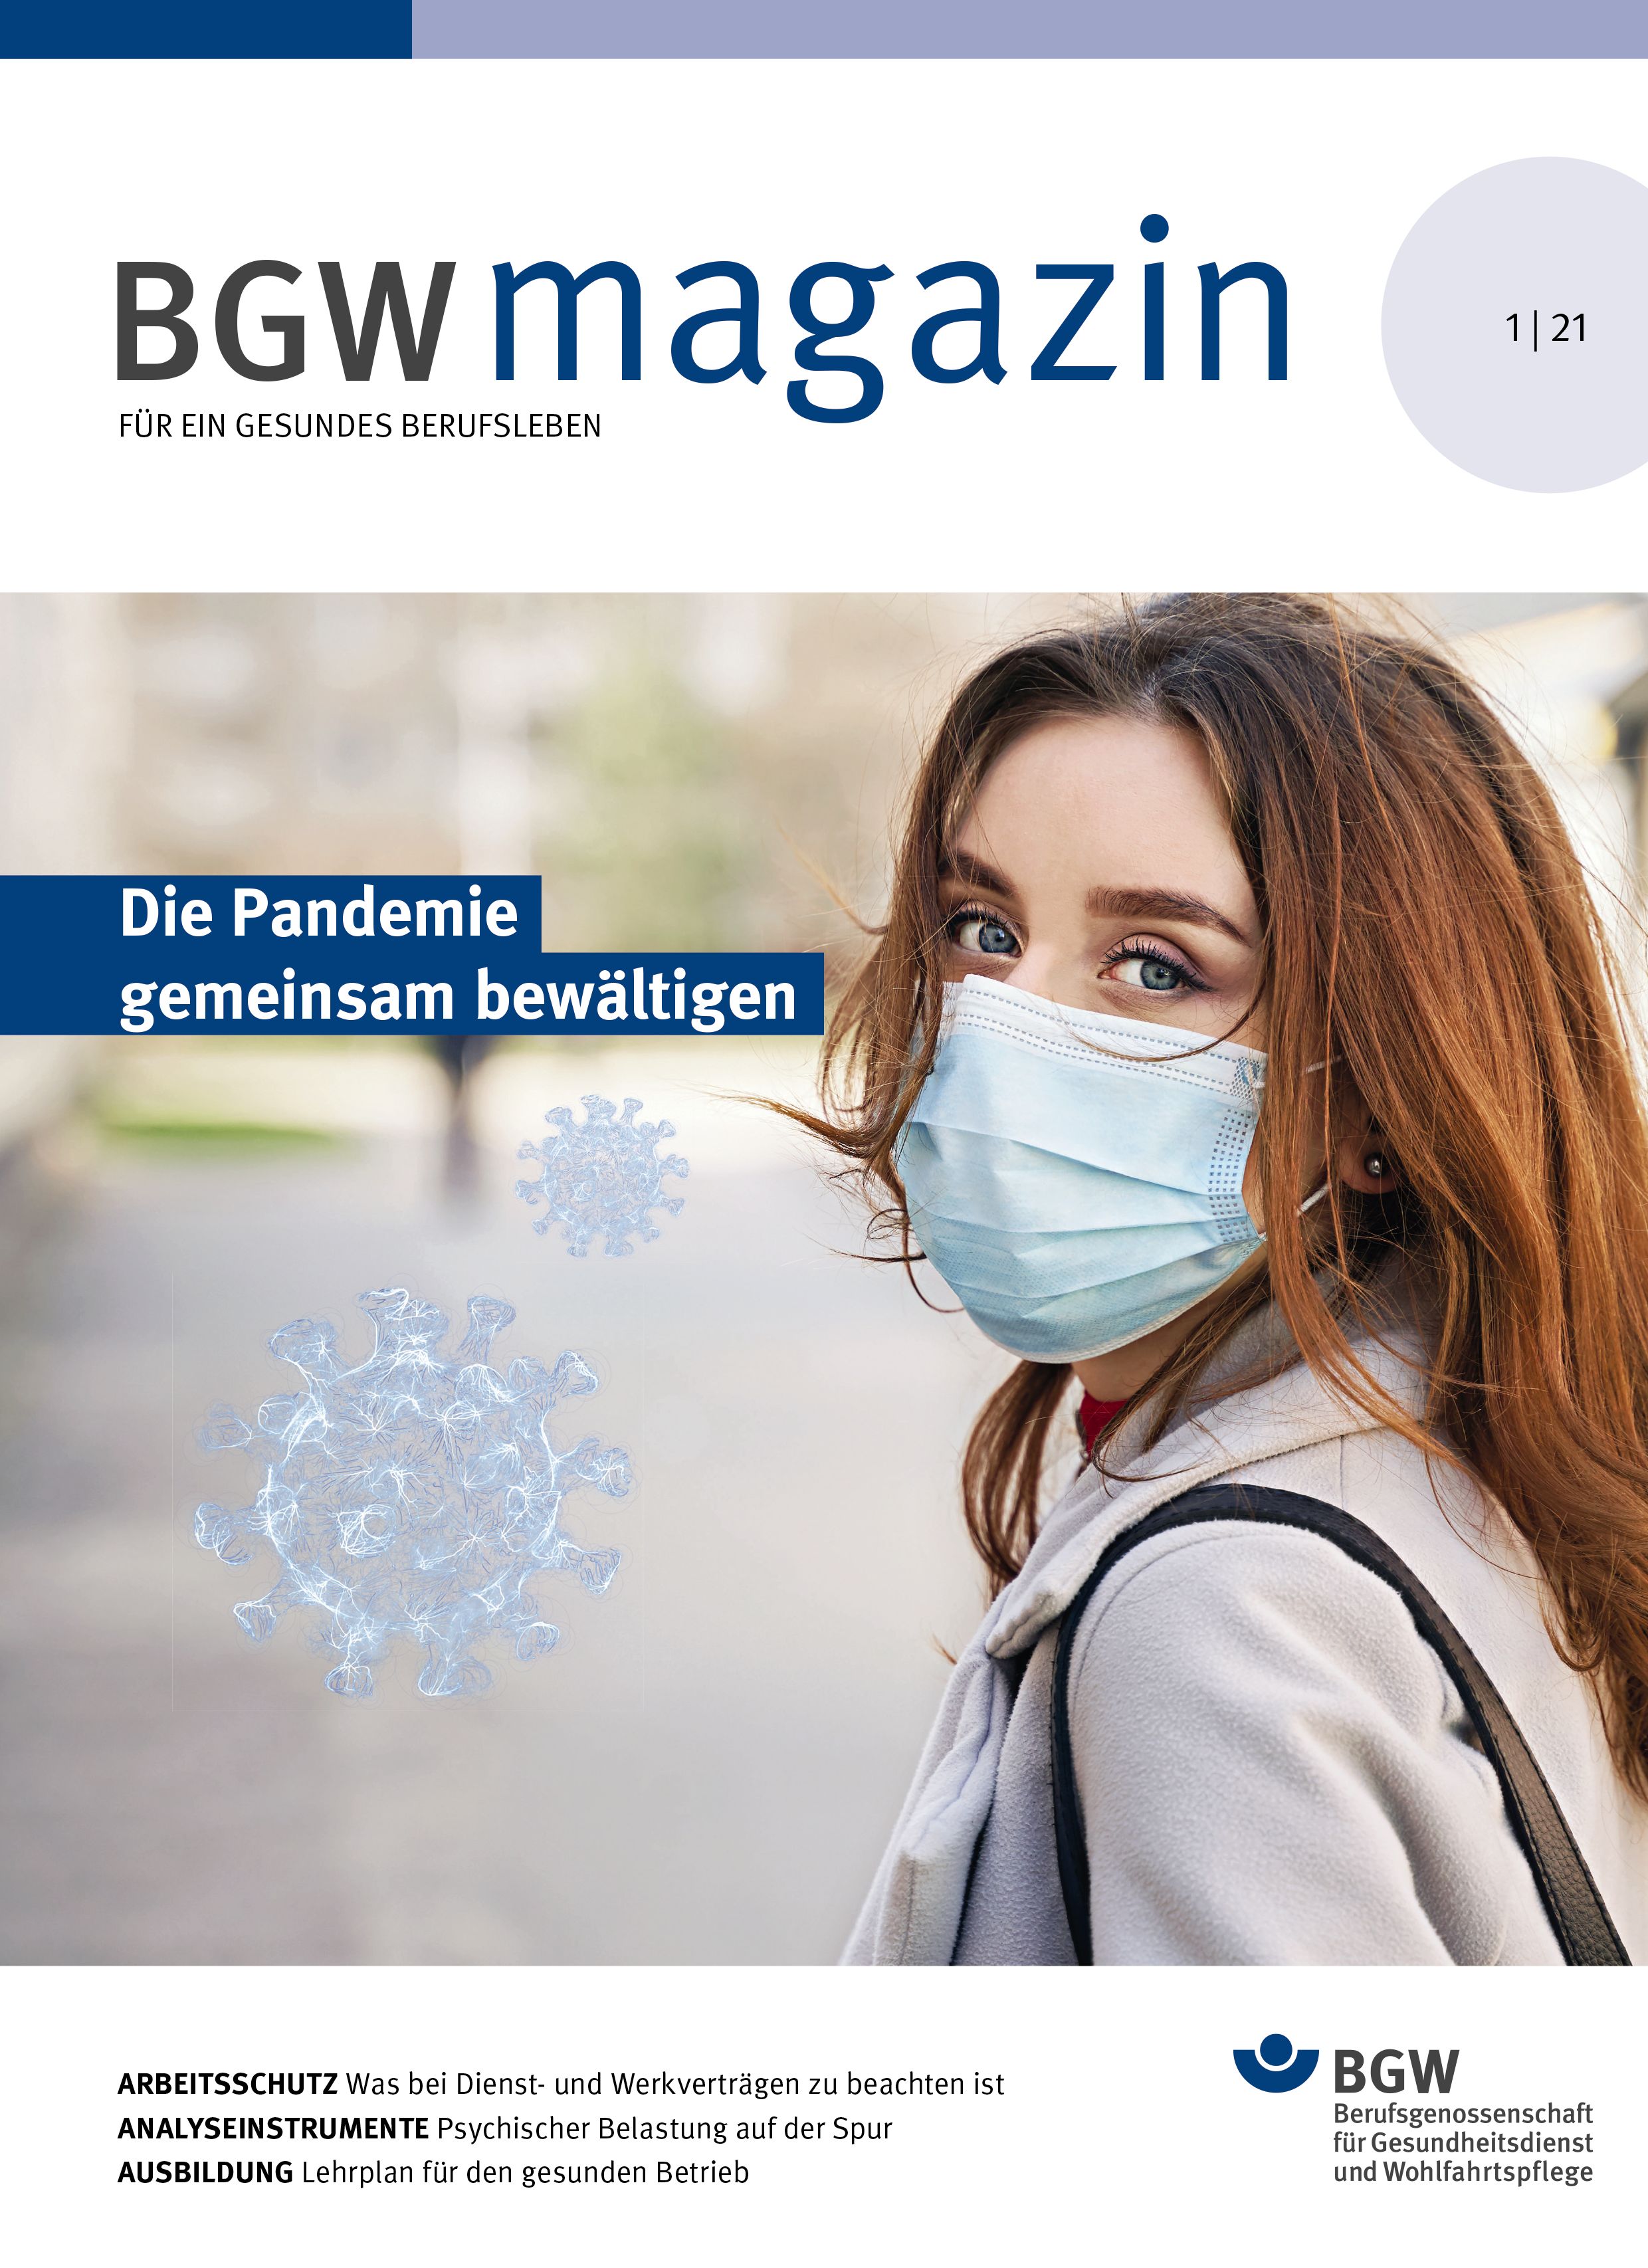 Titelseite des BGW magazins, Ausgabe 1/2021, mit dem Titelthema "Die Pandemie gemeinsam bewältigen"